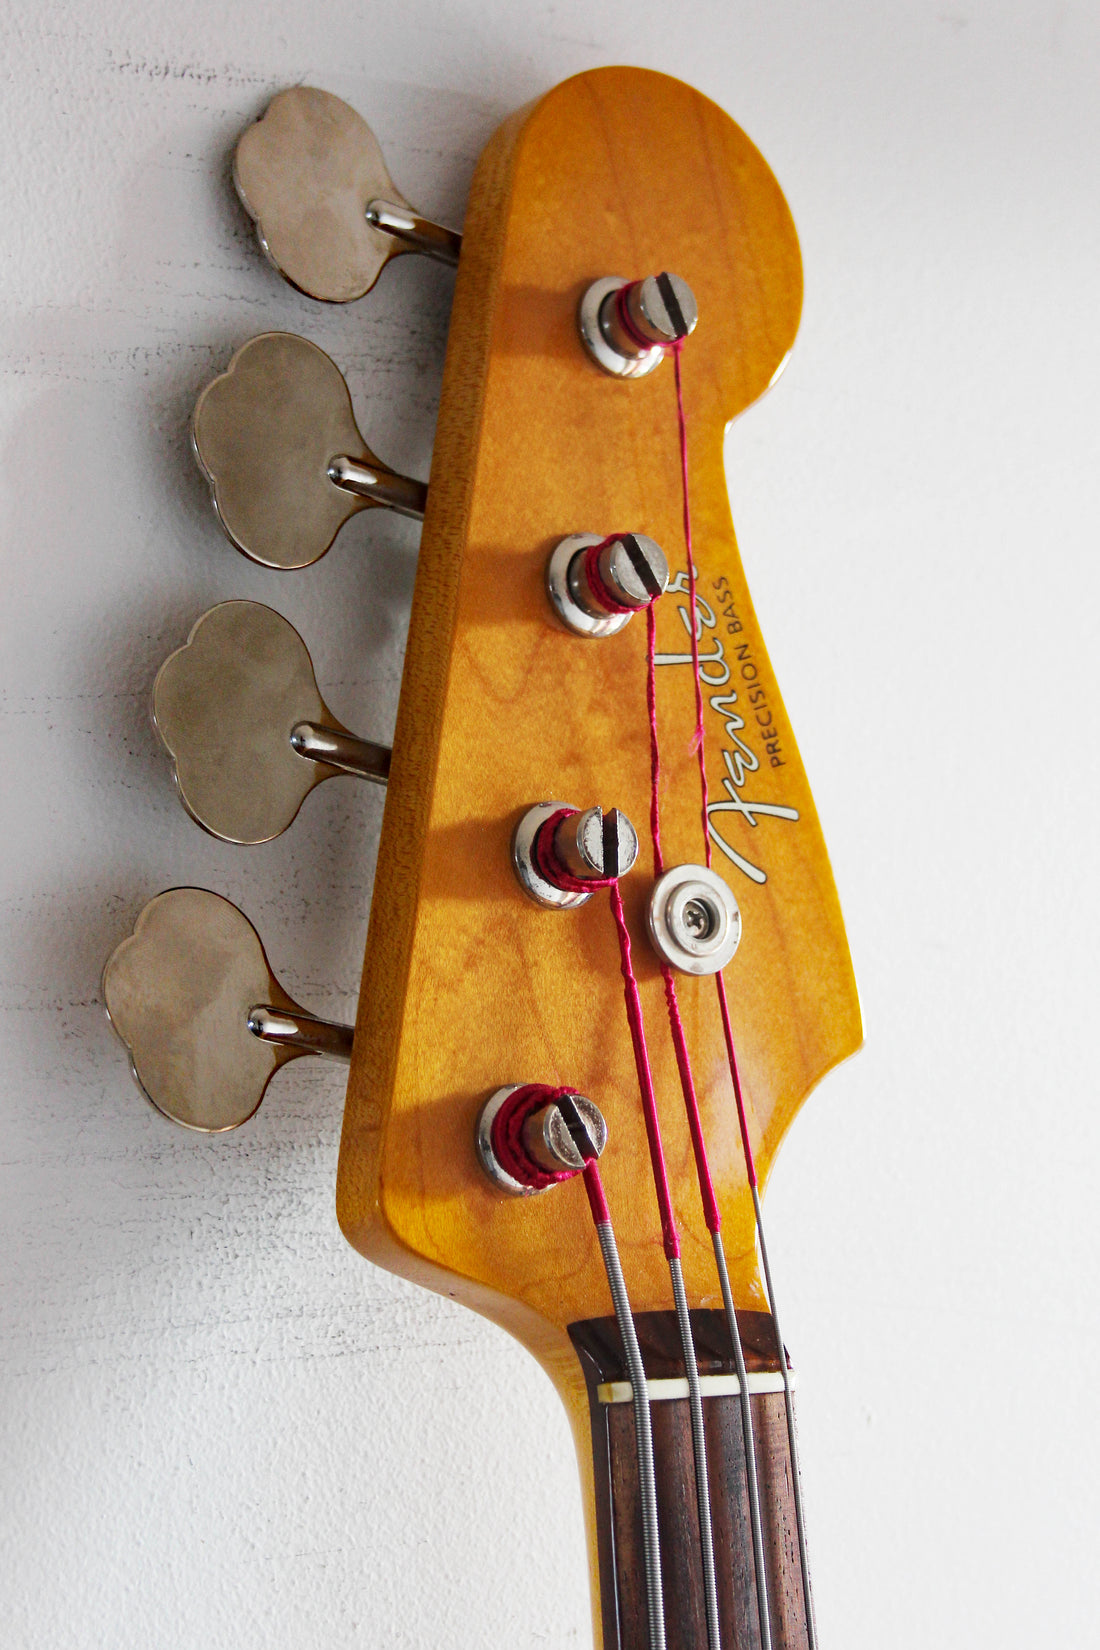 Used Fender Precision Bass '62 Vintage Black/Tort modded